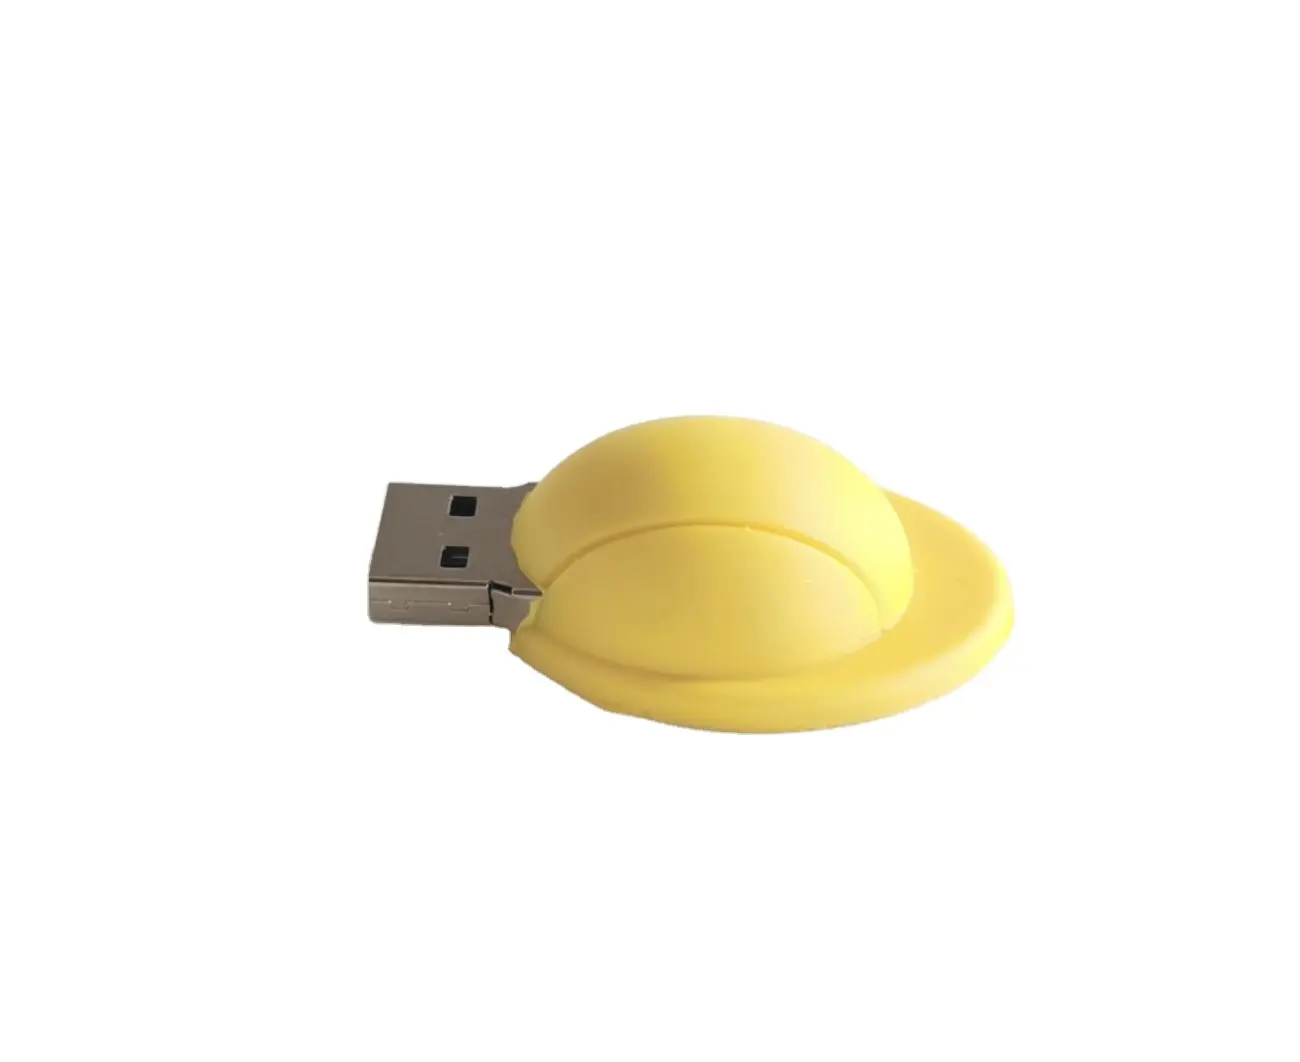 แกดเจ็ต USB หมวกกันน็อคสีเหลือง 32GB พร้อมใช้ แฟลชไดรฟ์ USB รูปหมวกกันน็อคขนาด 16GB พร้อมการพิมพ์โลโก้